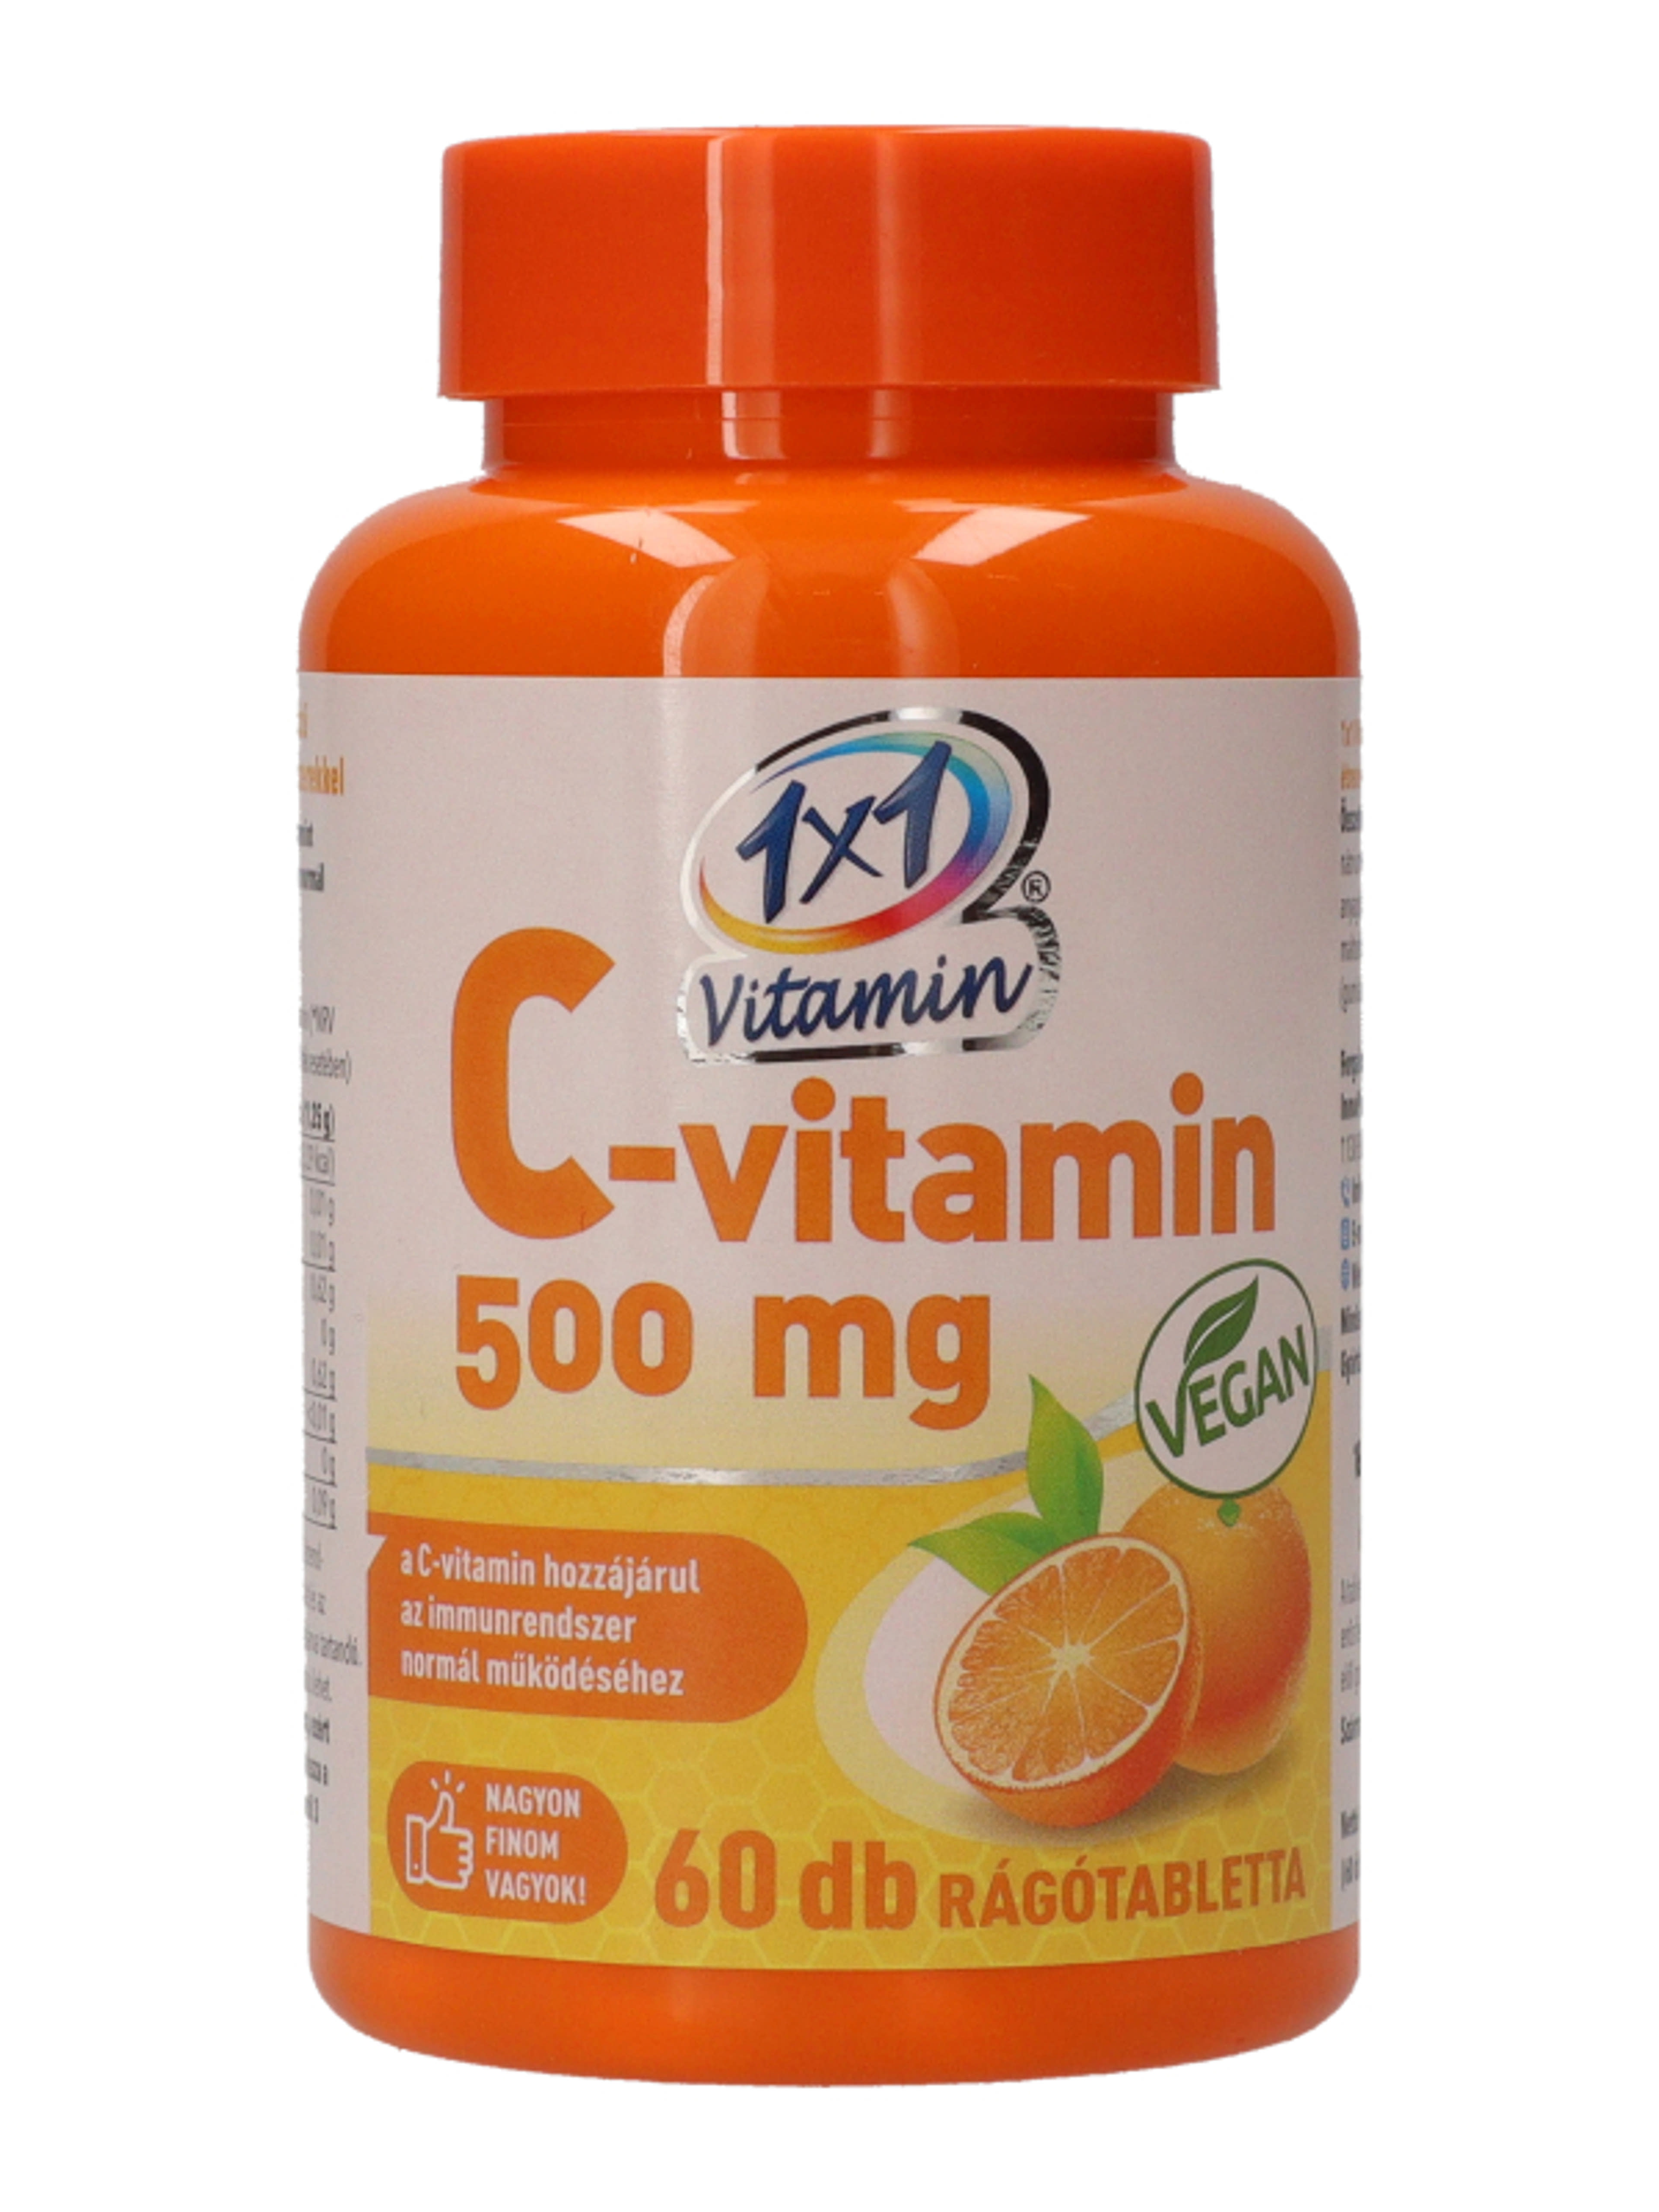 1x1 Vitamin C-Vitamin 500mg rágótabletta - 60 db-2